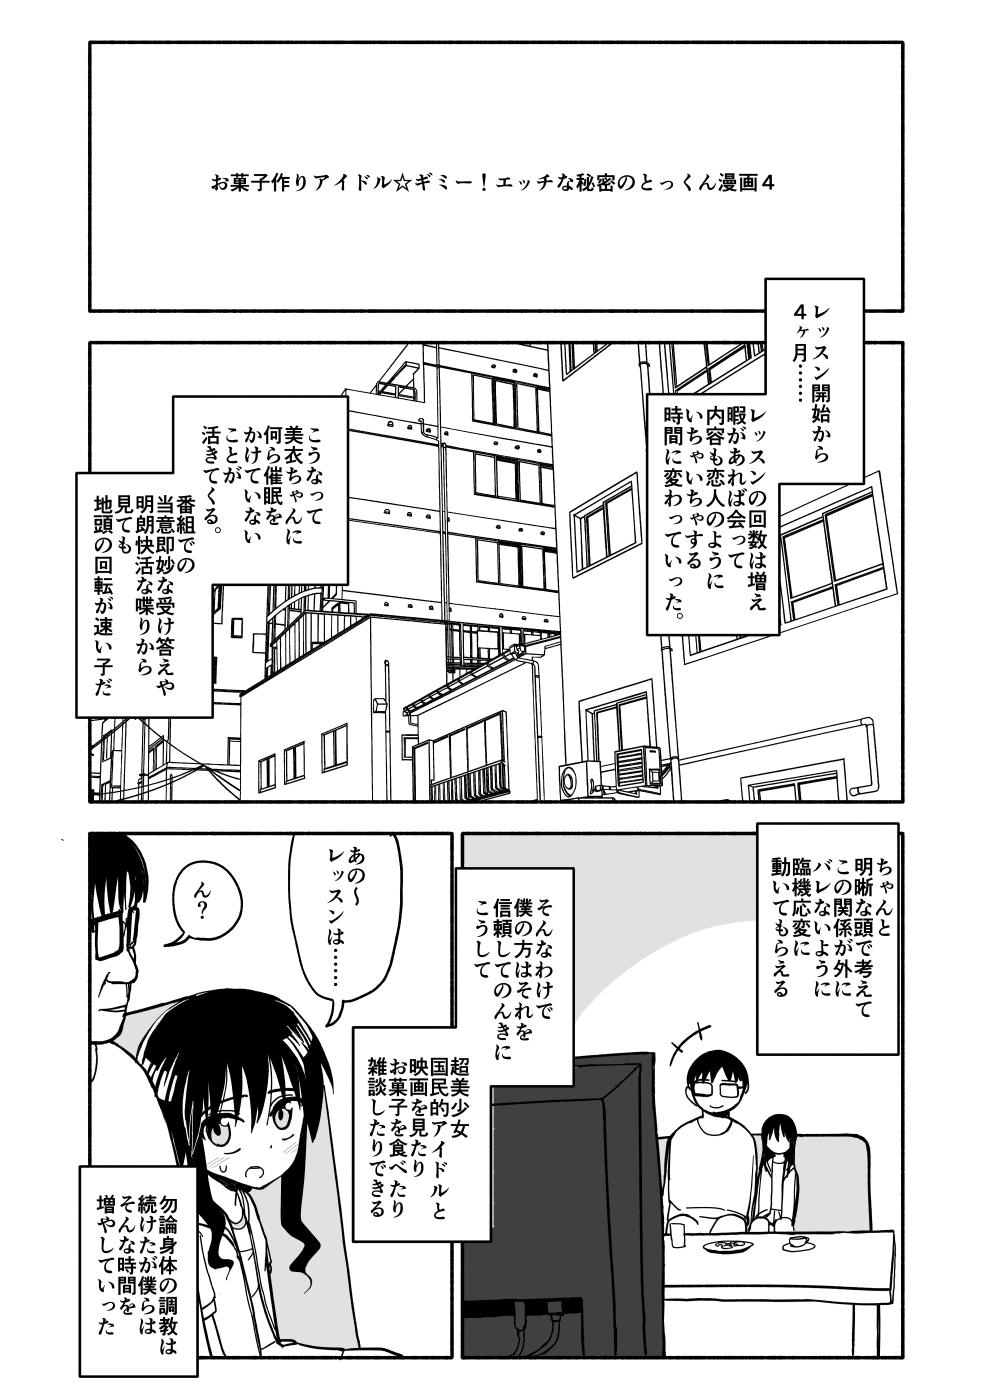 Okashi Tsukuri Idol ☆ Gimi ! Ecchi na Himitsu no Tokkun manga 64